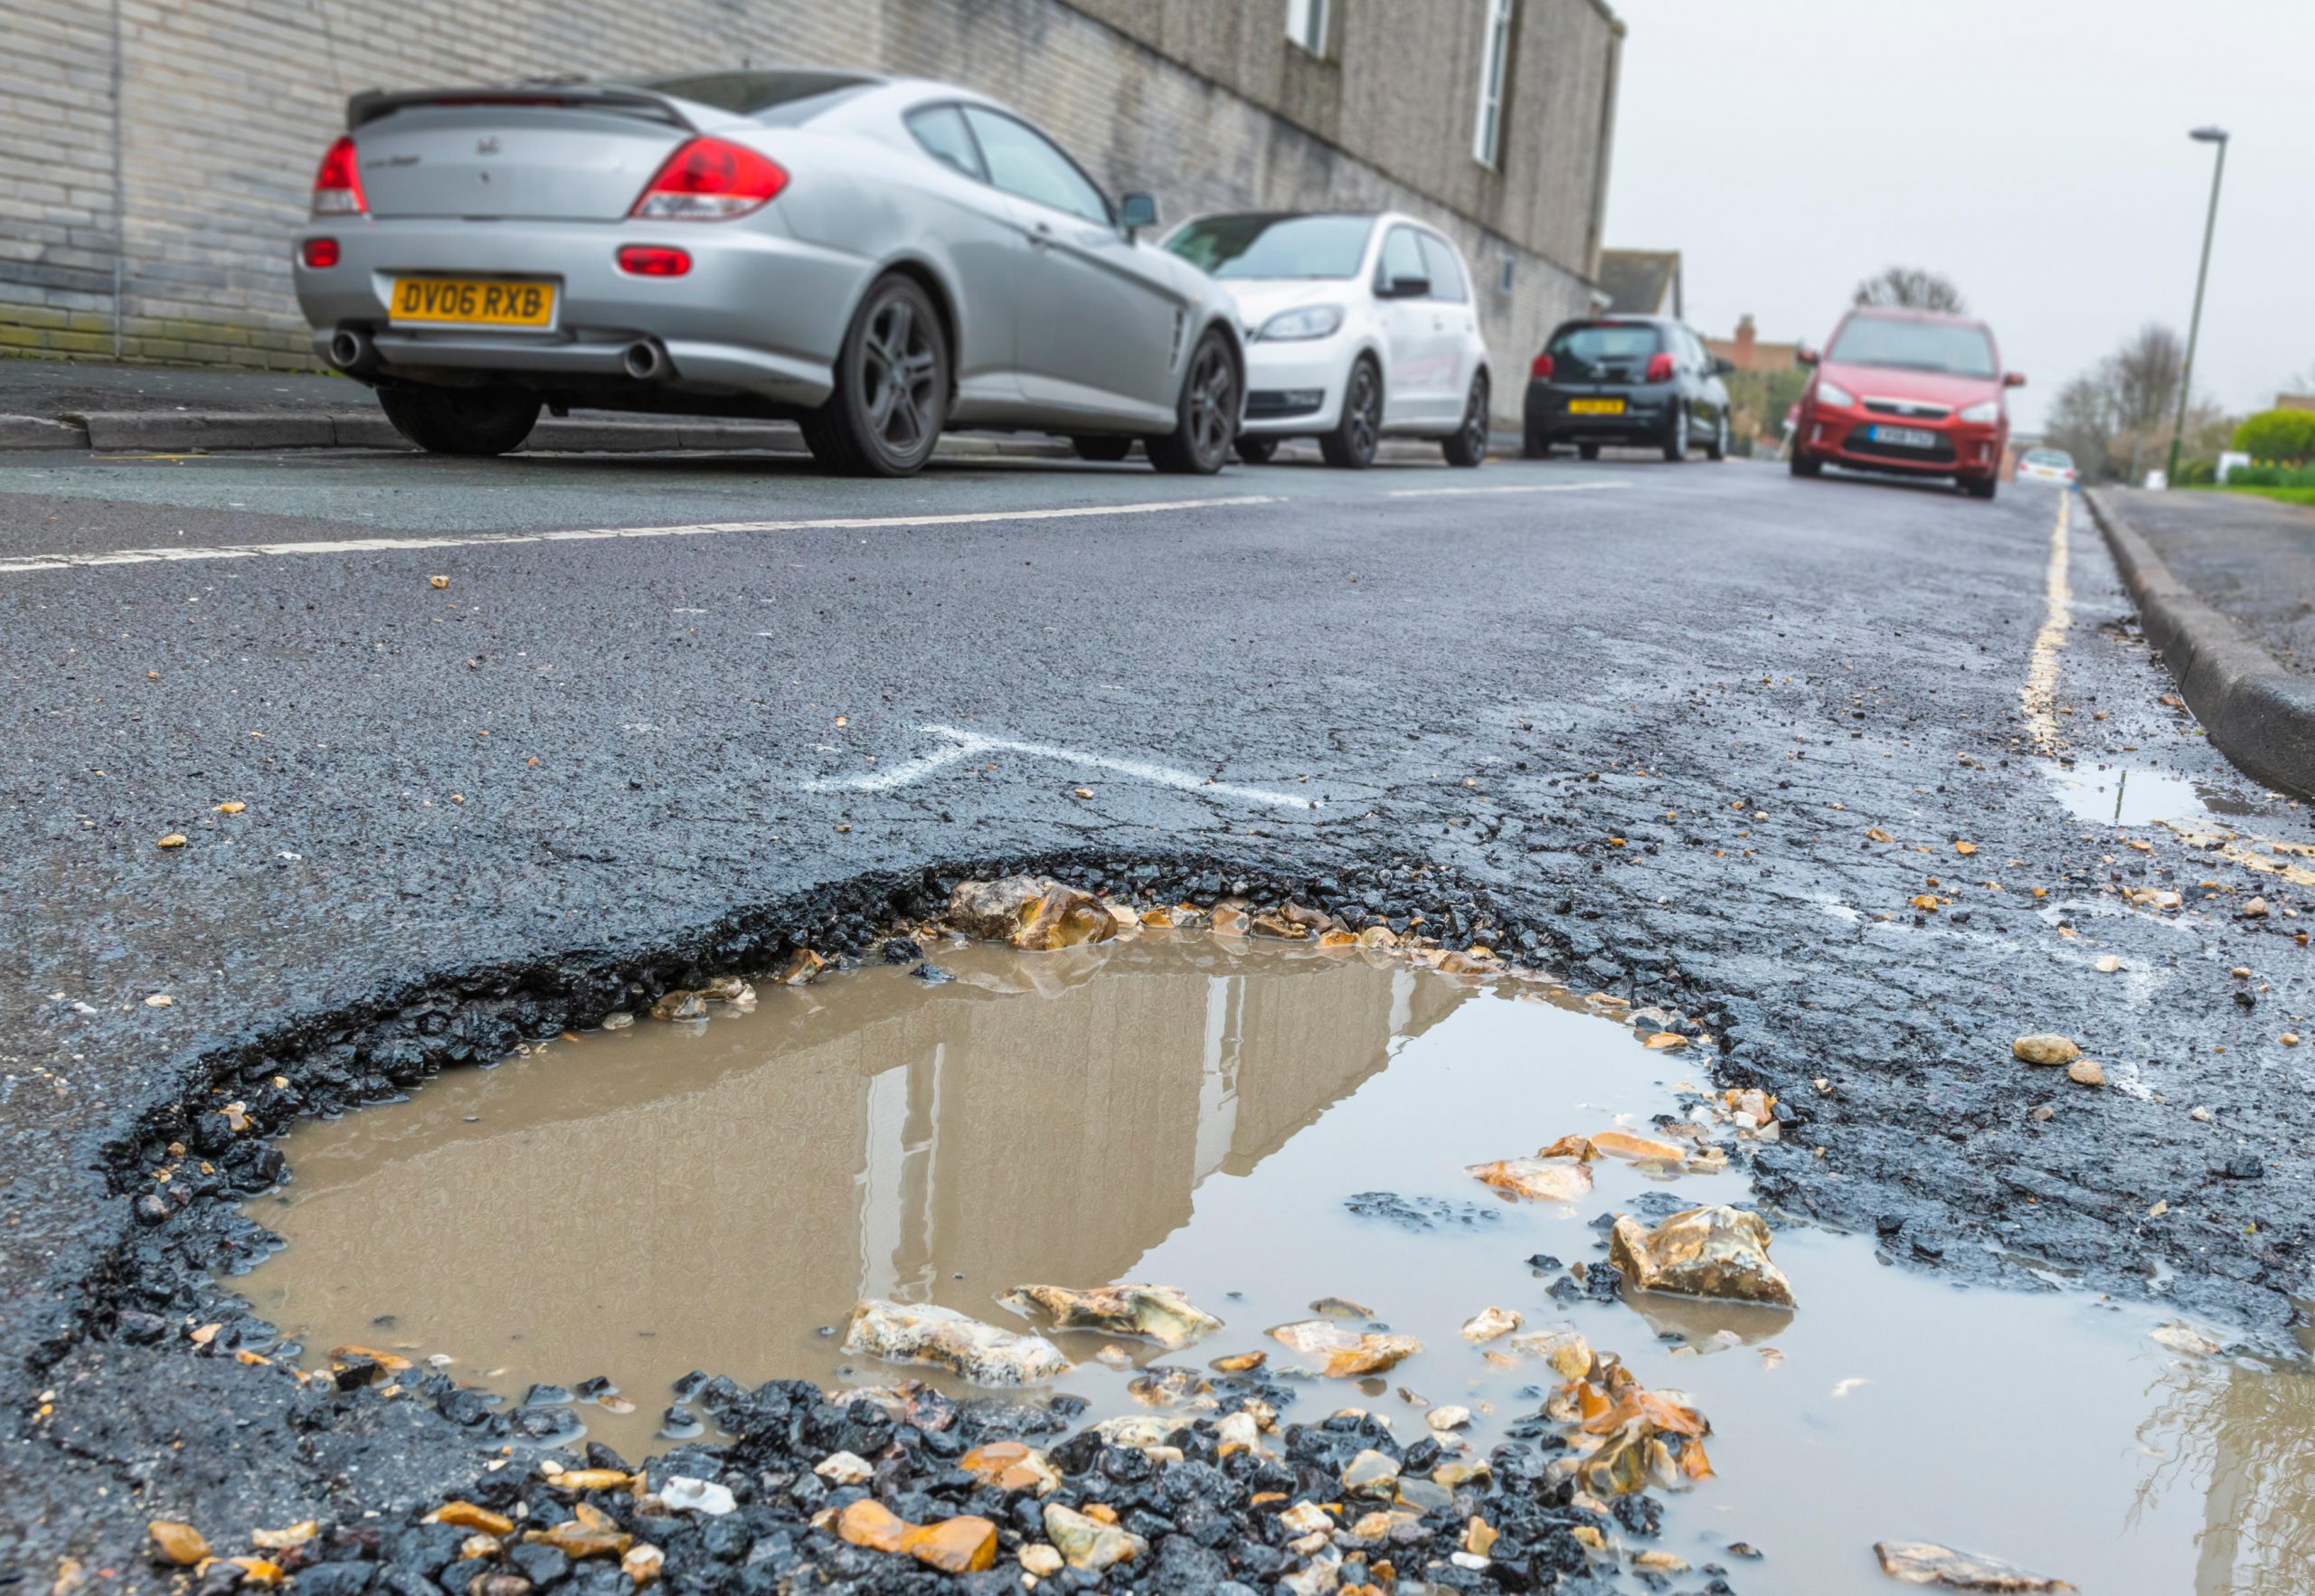 Five steps to claim back compensation for pothole damage